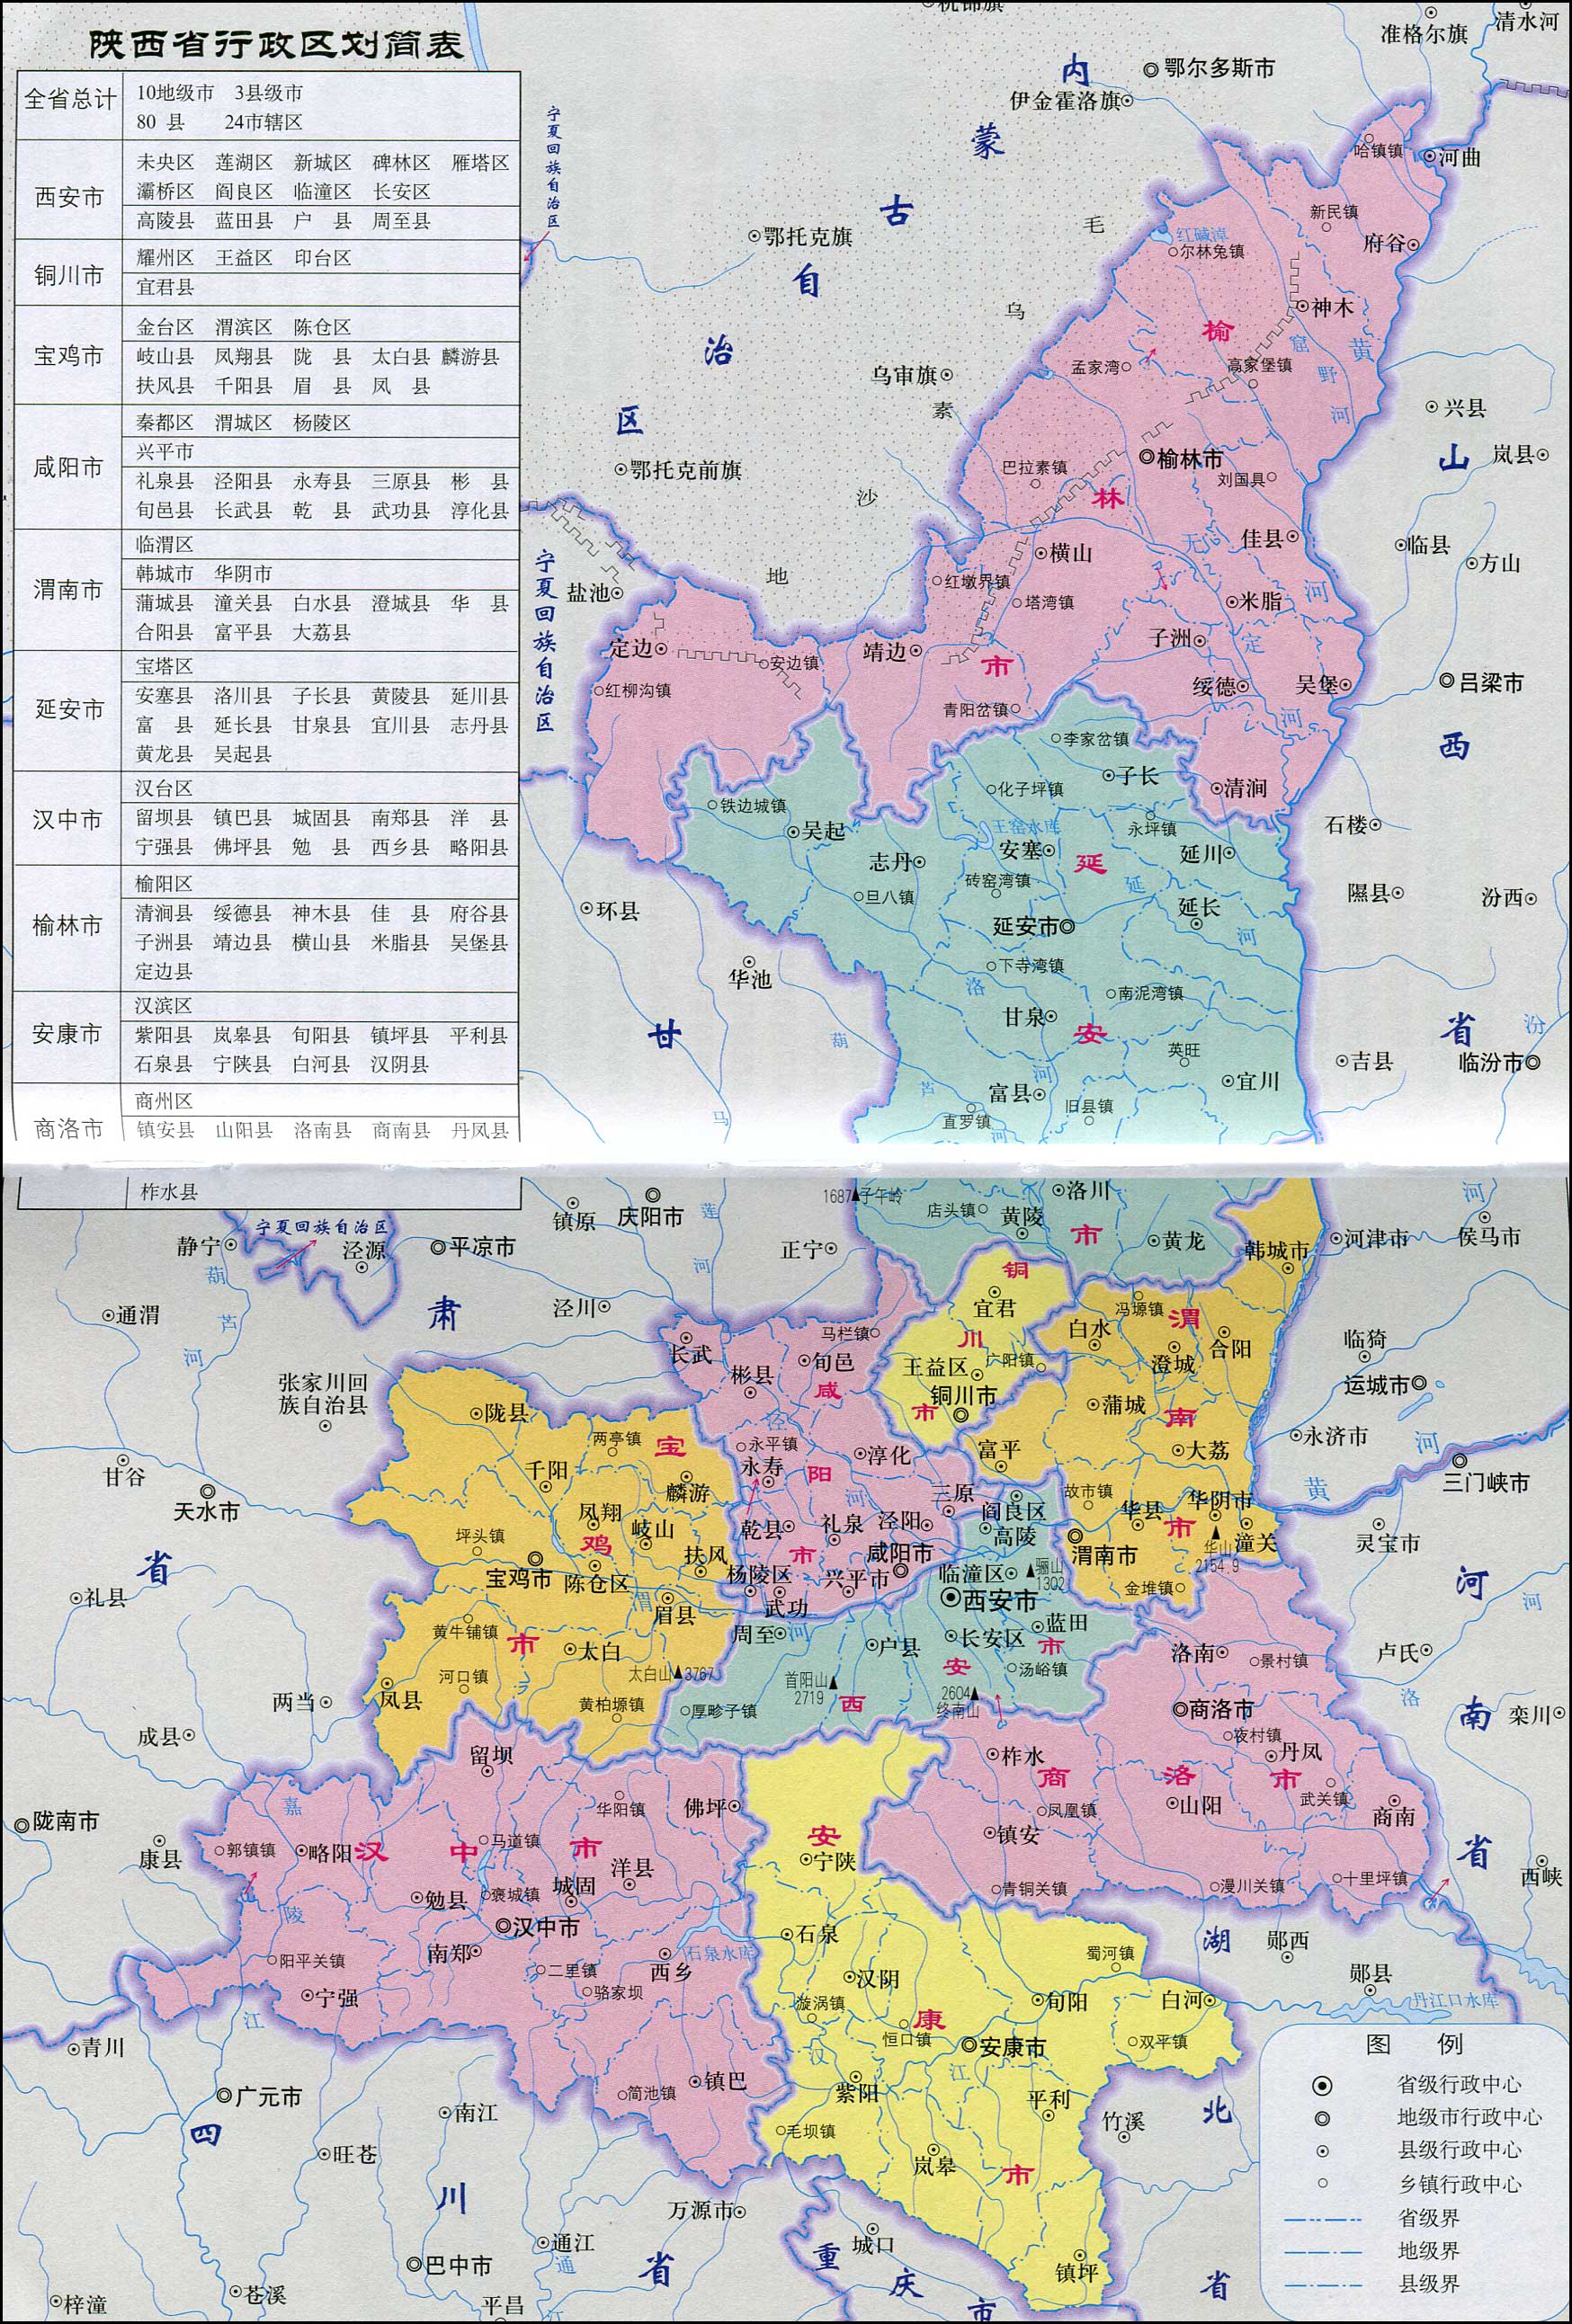 陕西地图(政区图)